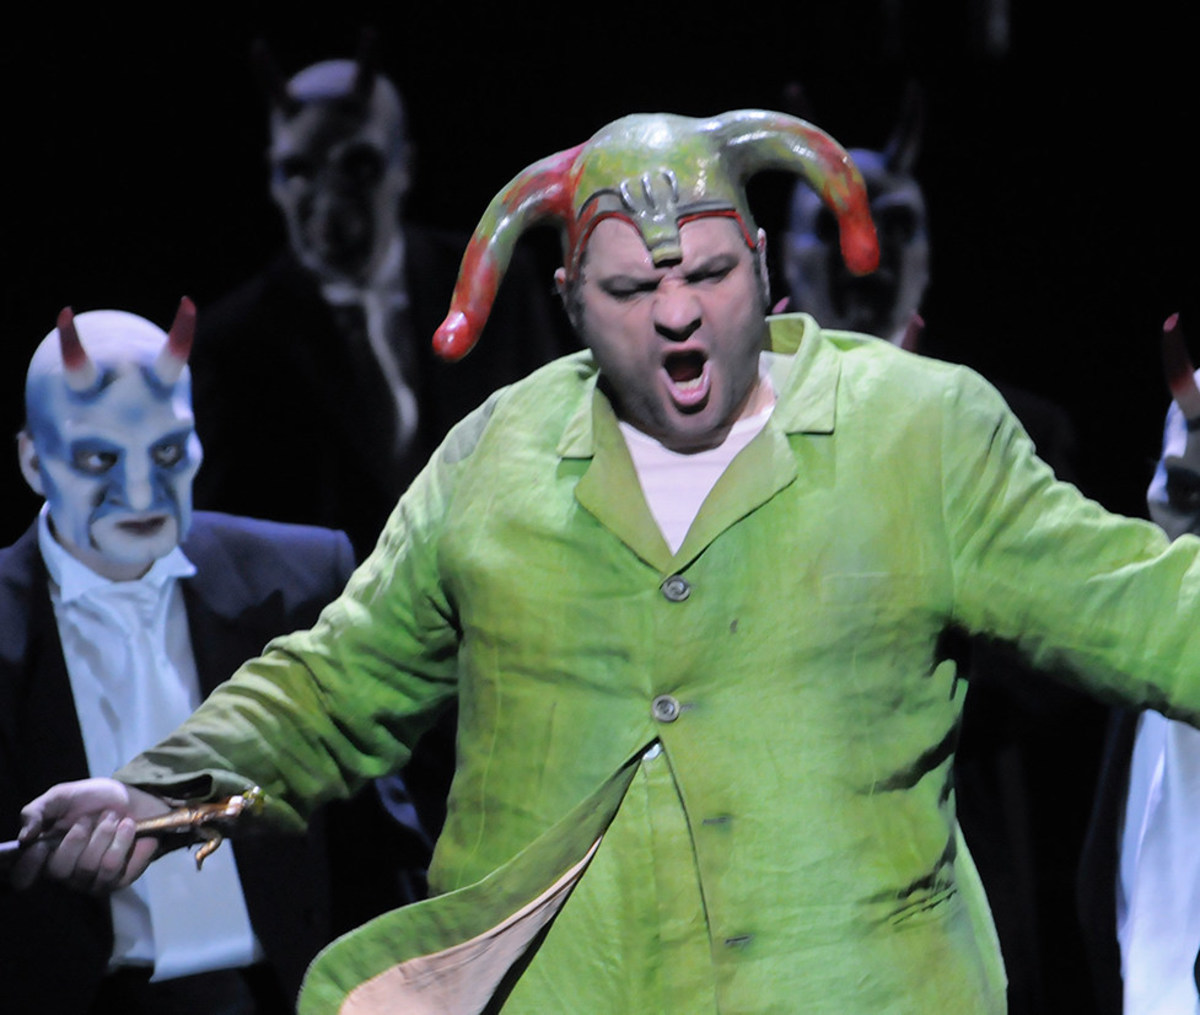 Szene aus "Rigoletto": Sänger in grünfarbenem Kostüm steht vor weiteren Sängern